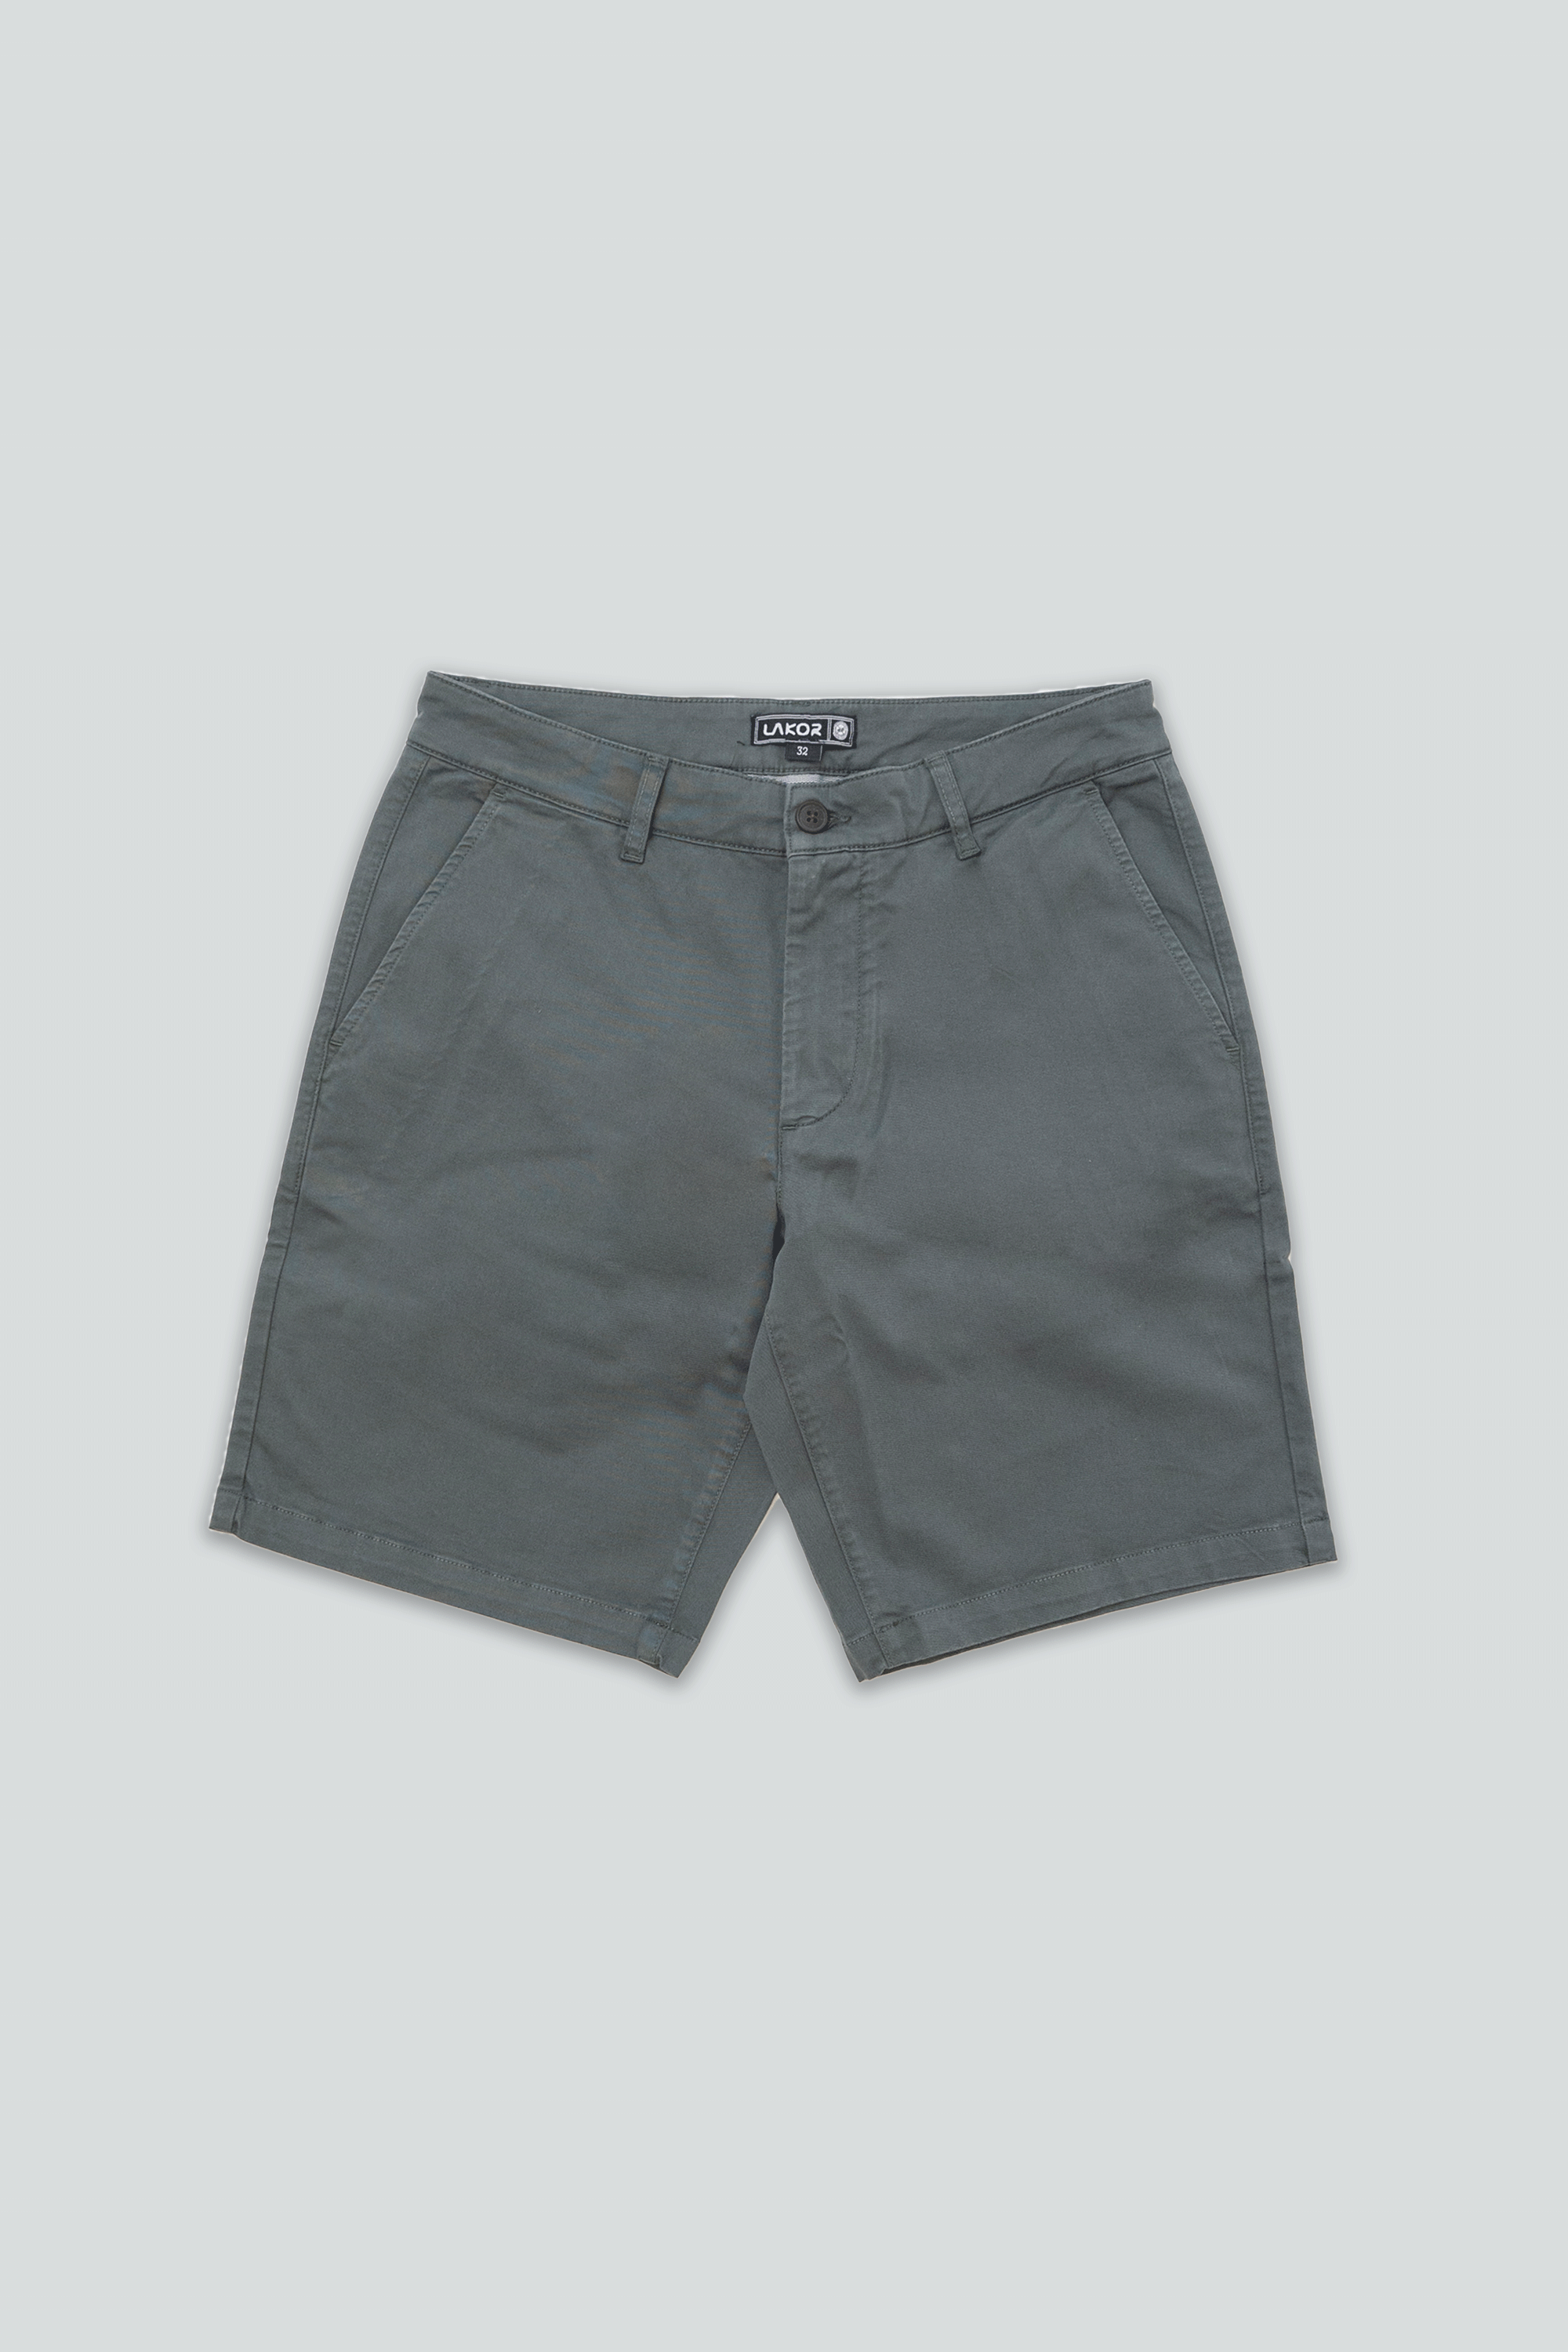 Chino Shorts (Urban Chic)